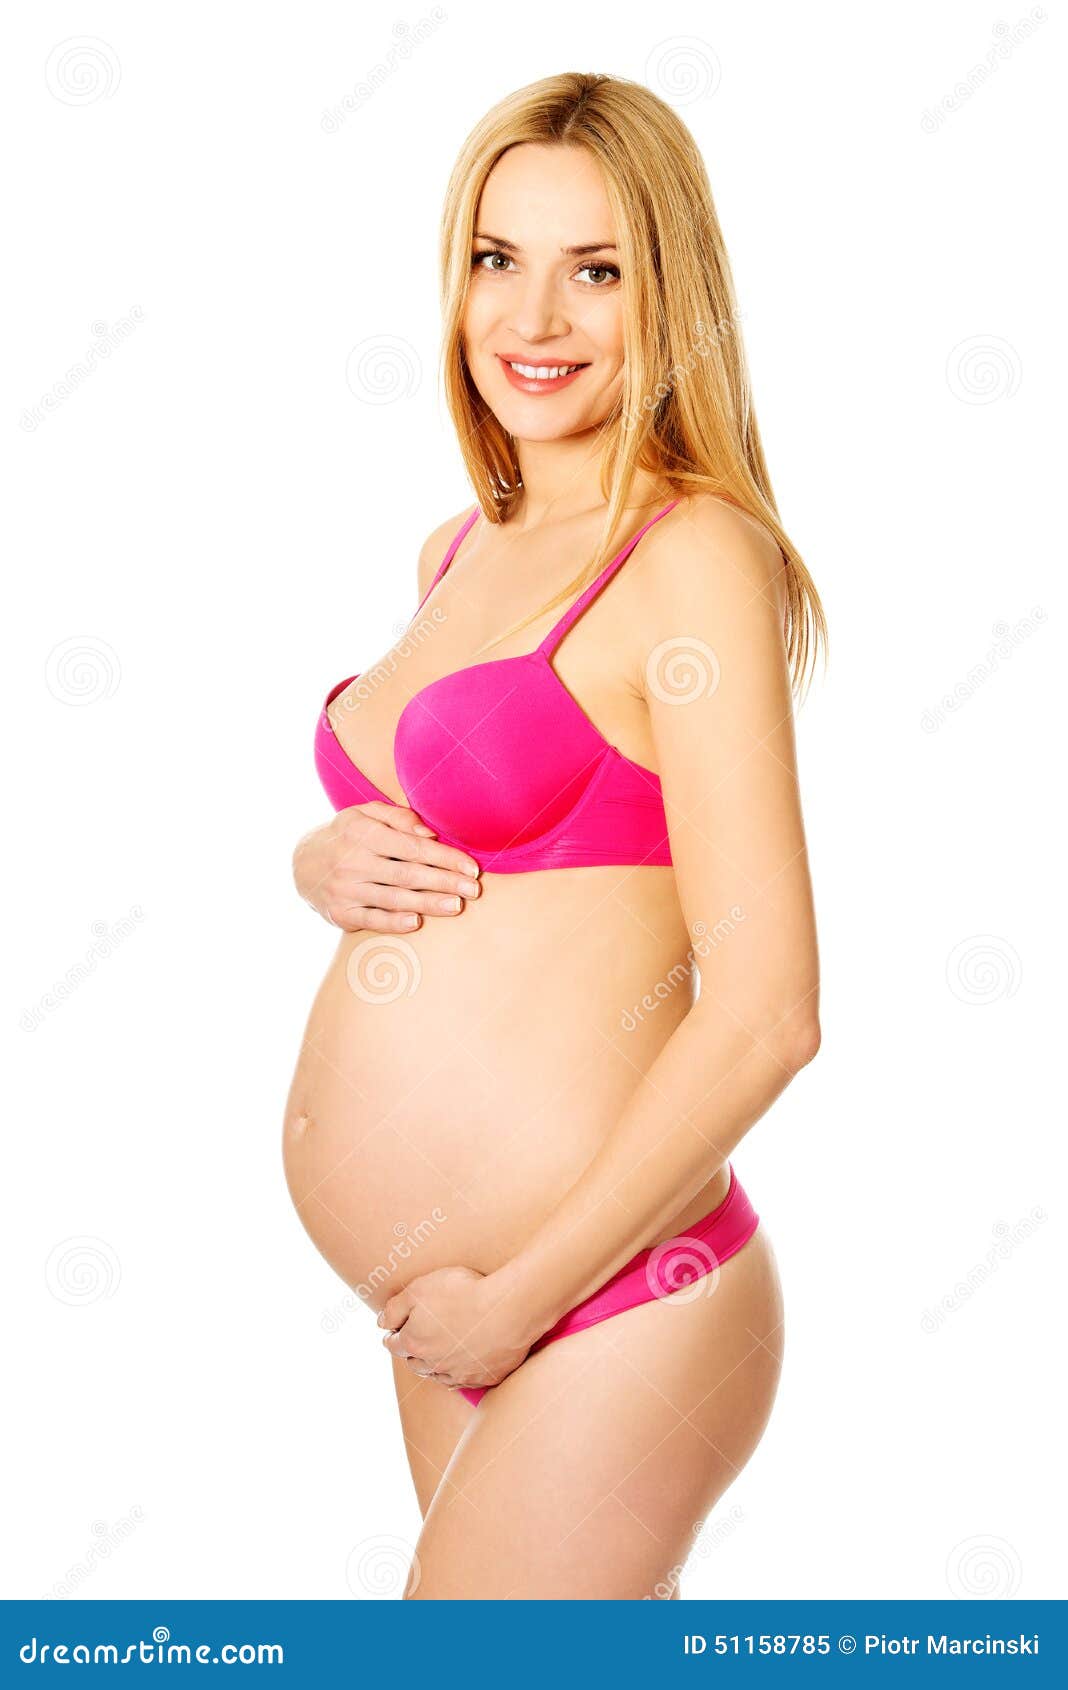 Pregnant Women In Lingerie 108